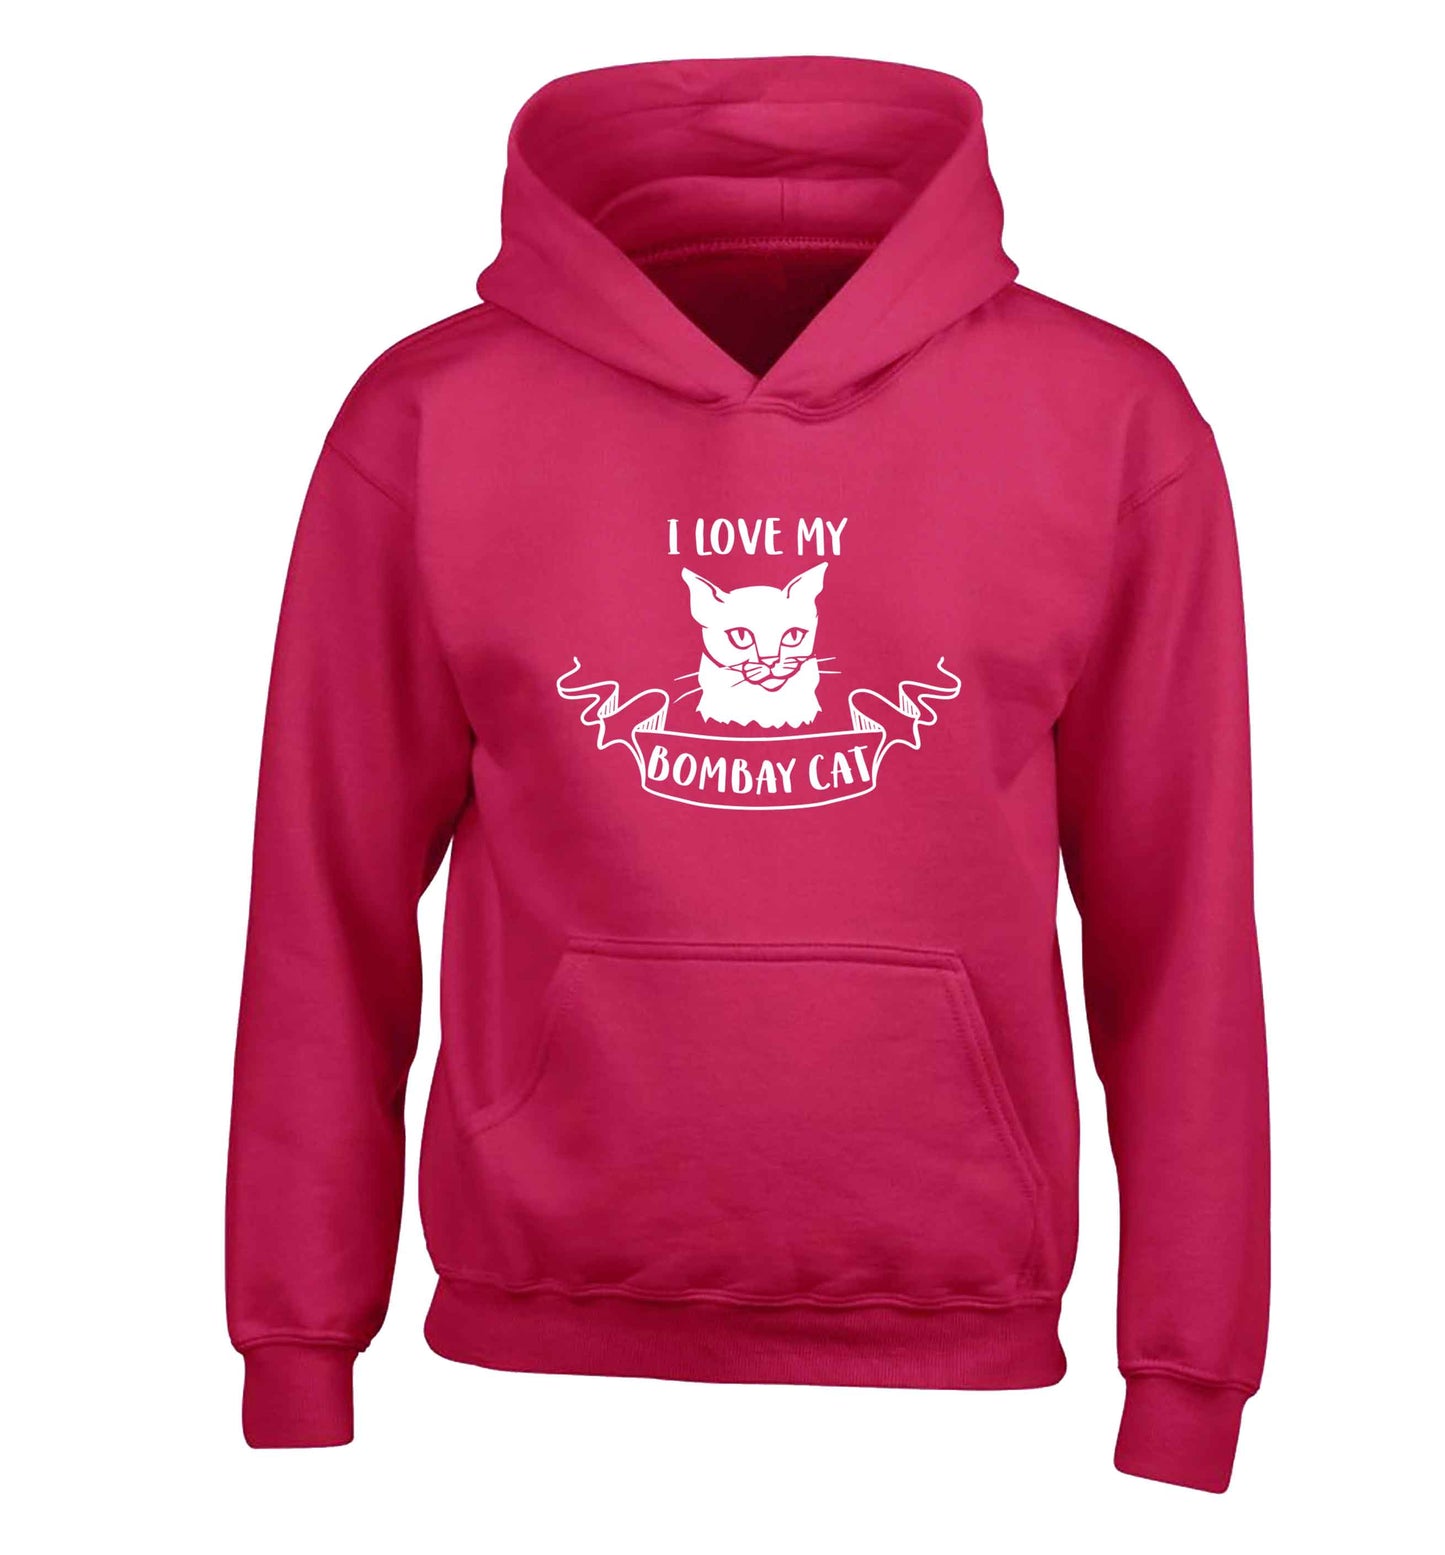 I love my bombay cat children's pink hoodie 12-13 Years